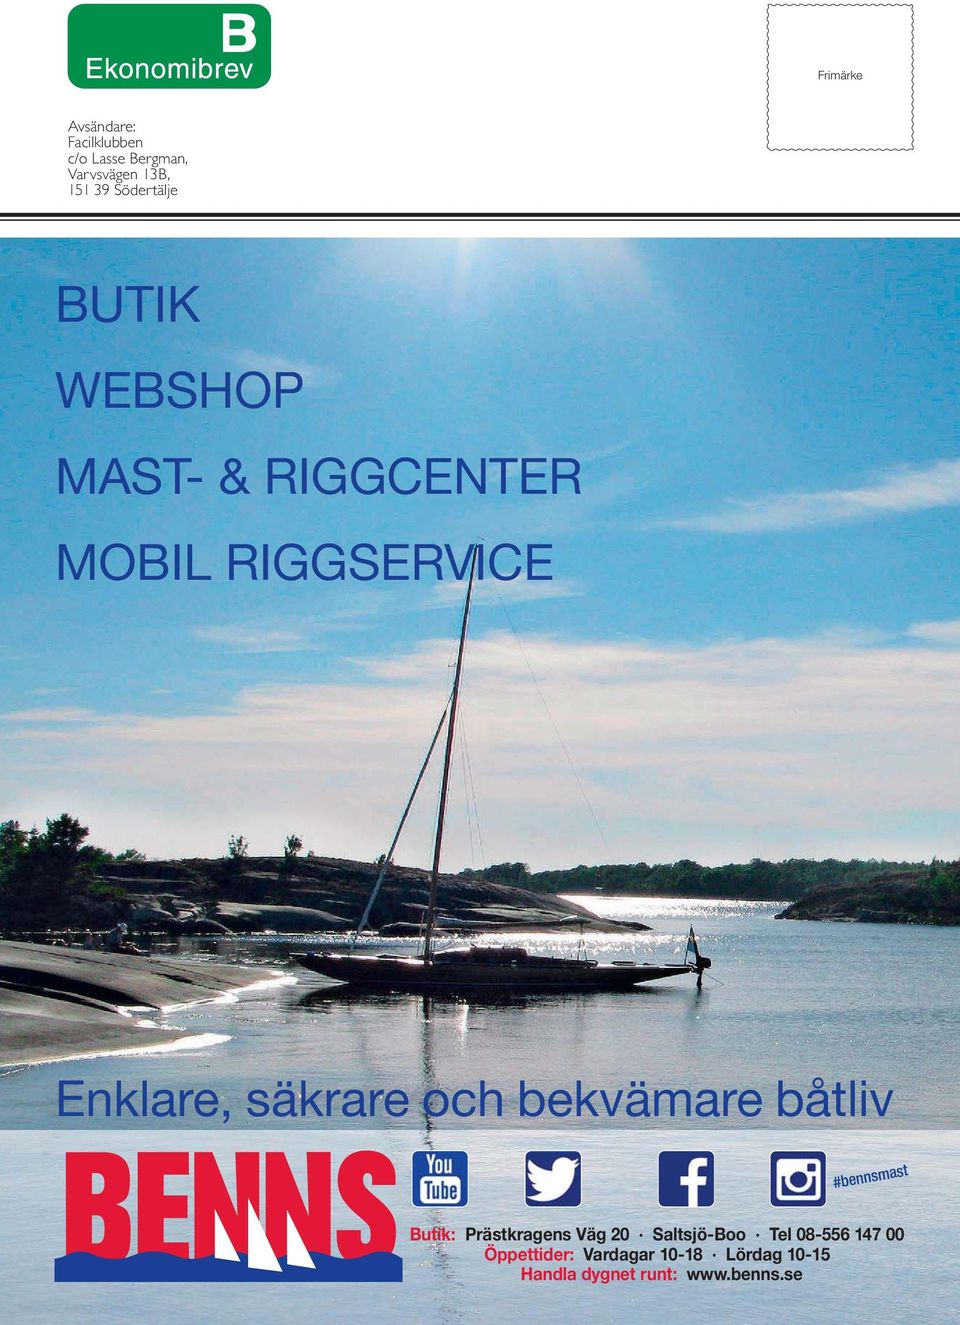 och bekvämare båtliv #bennsmast Butik: Prästkragens Väg 20 Saltsjö-Boo Tel